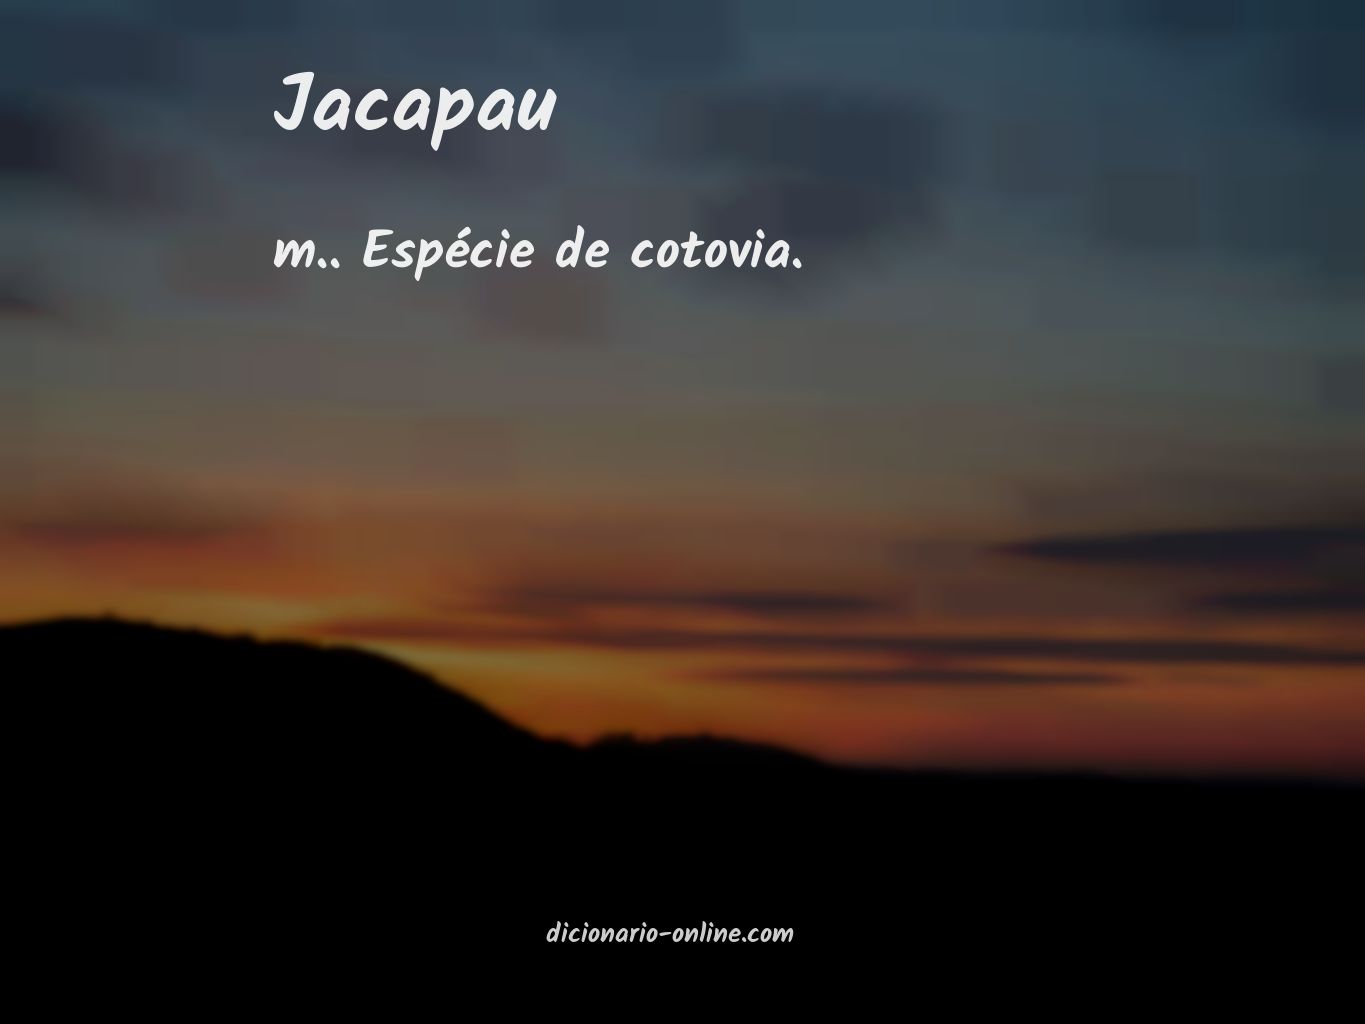 Significado de jacapau